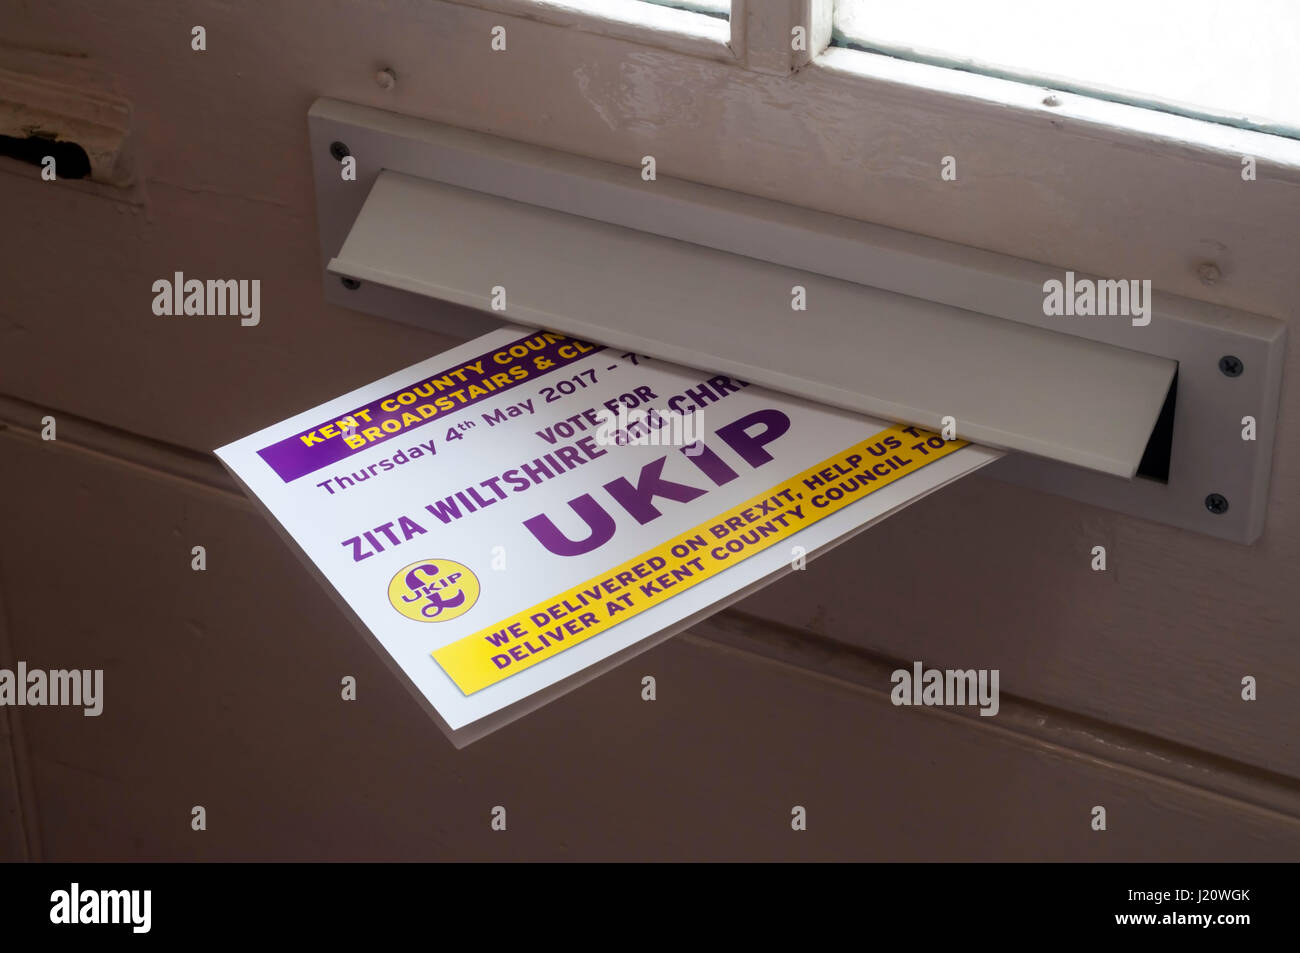 Elezione foglietto dalla ala destra UKIP, UK Independence Party, erogata attraverso il formato letterbox in Thanet. Le ricerche di mercato per il 2017 Kent County Council elezioni Foto Stock